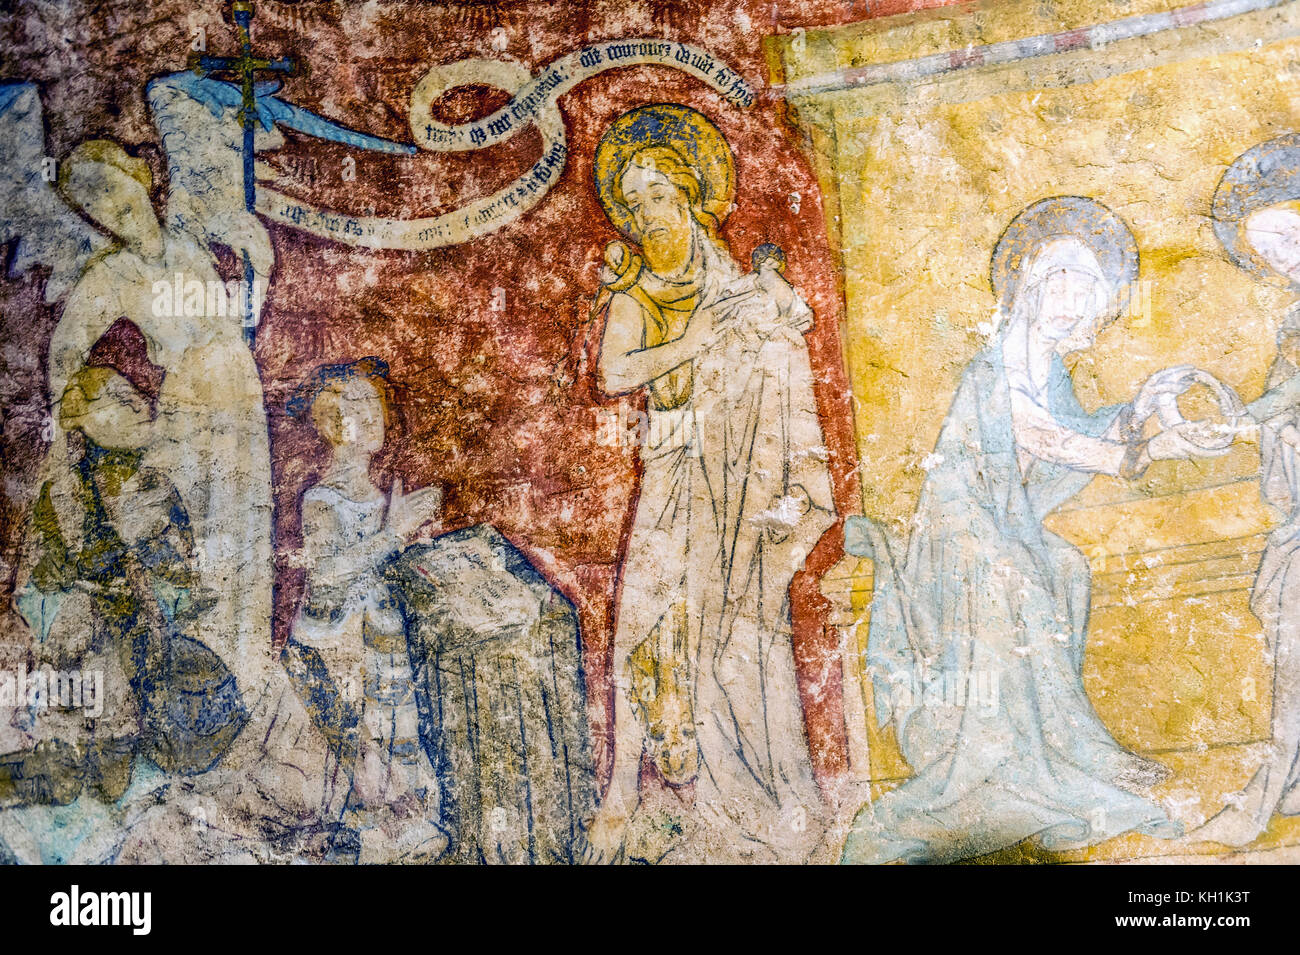 La France. Loir-et-Cher (41), Saint-Aignan. Des fresques murales datant du 11e siècle concernant la vie de Saint Gilles Banque D'Images